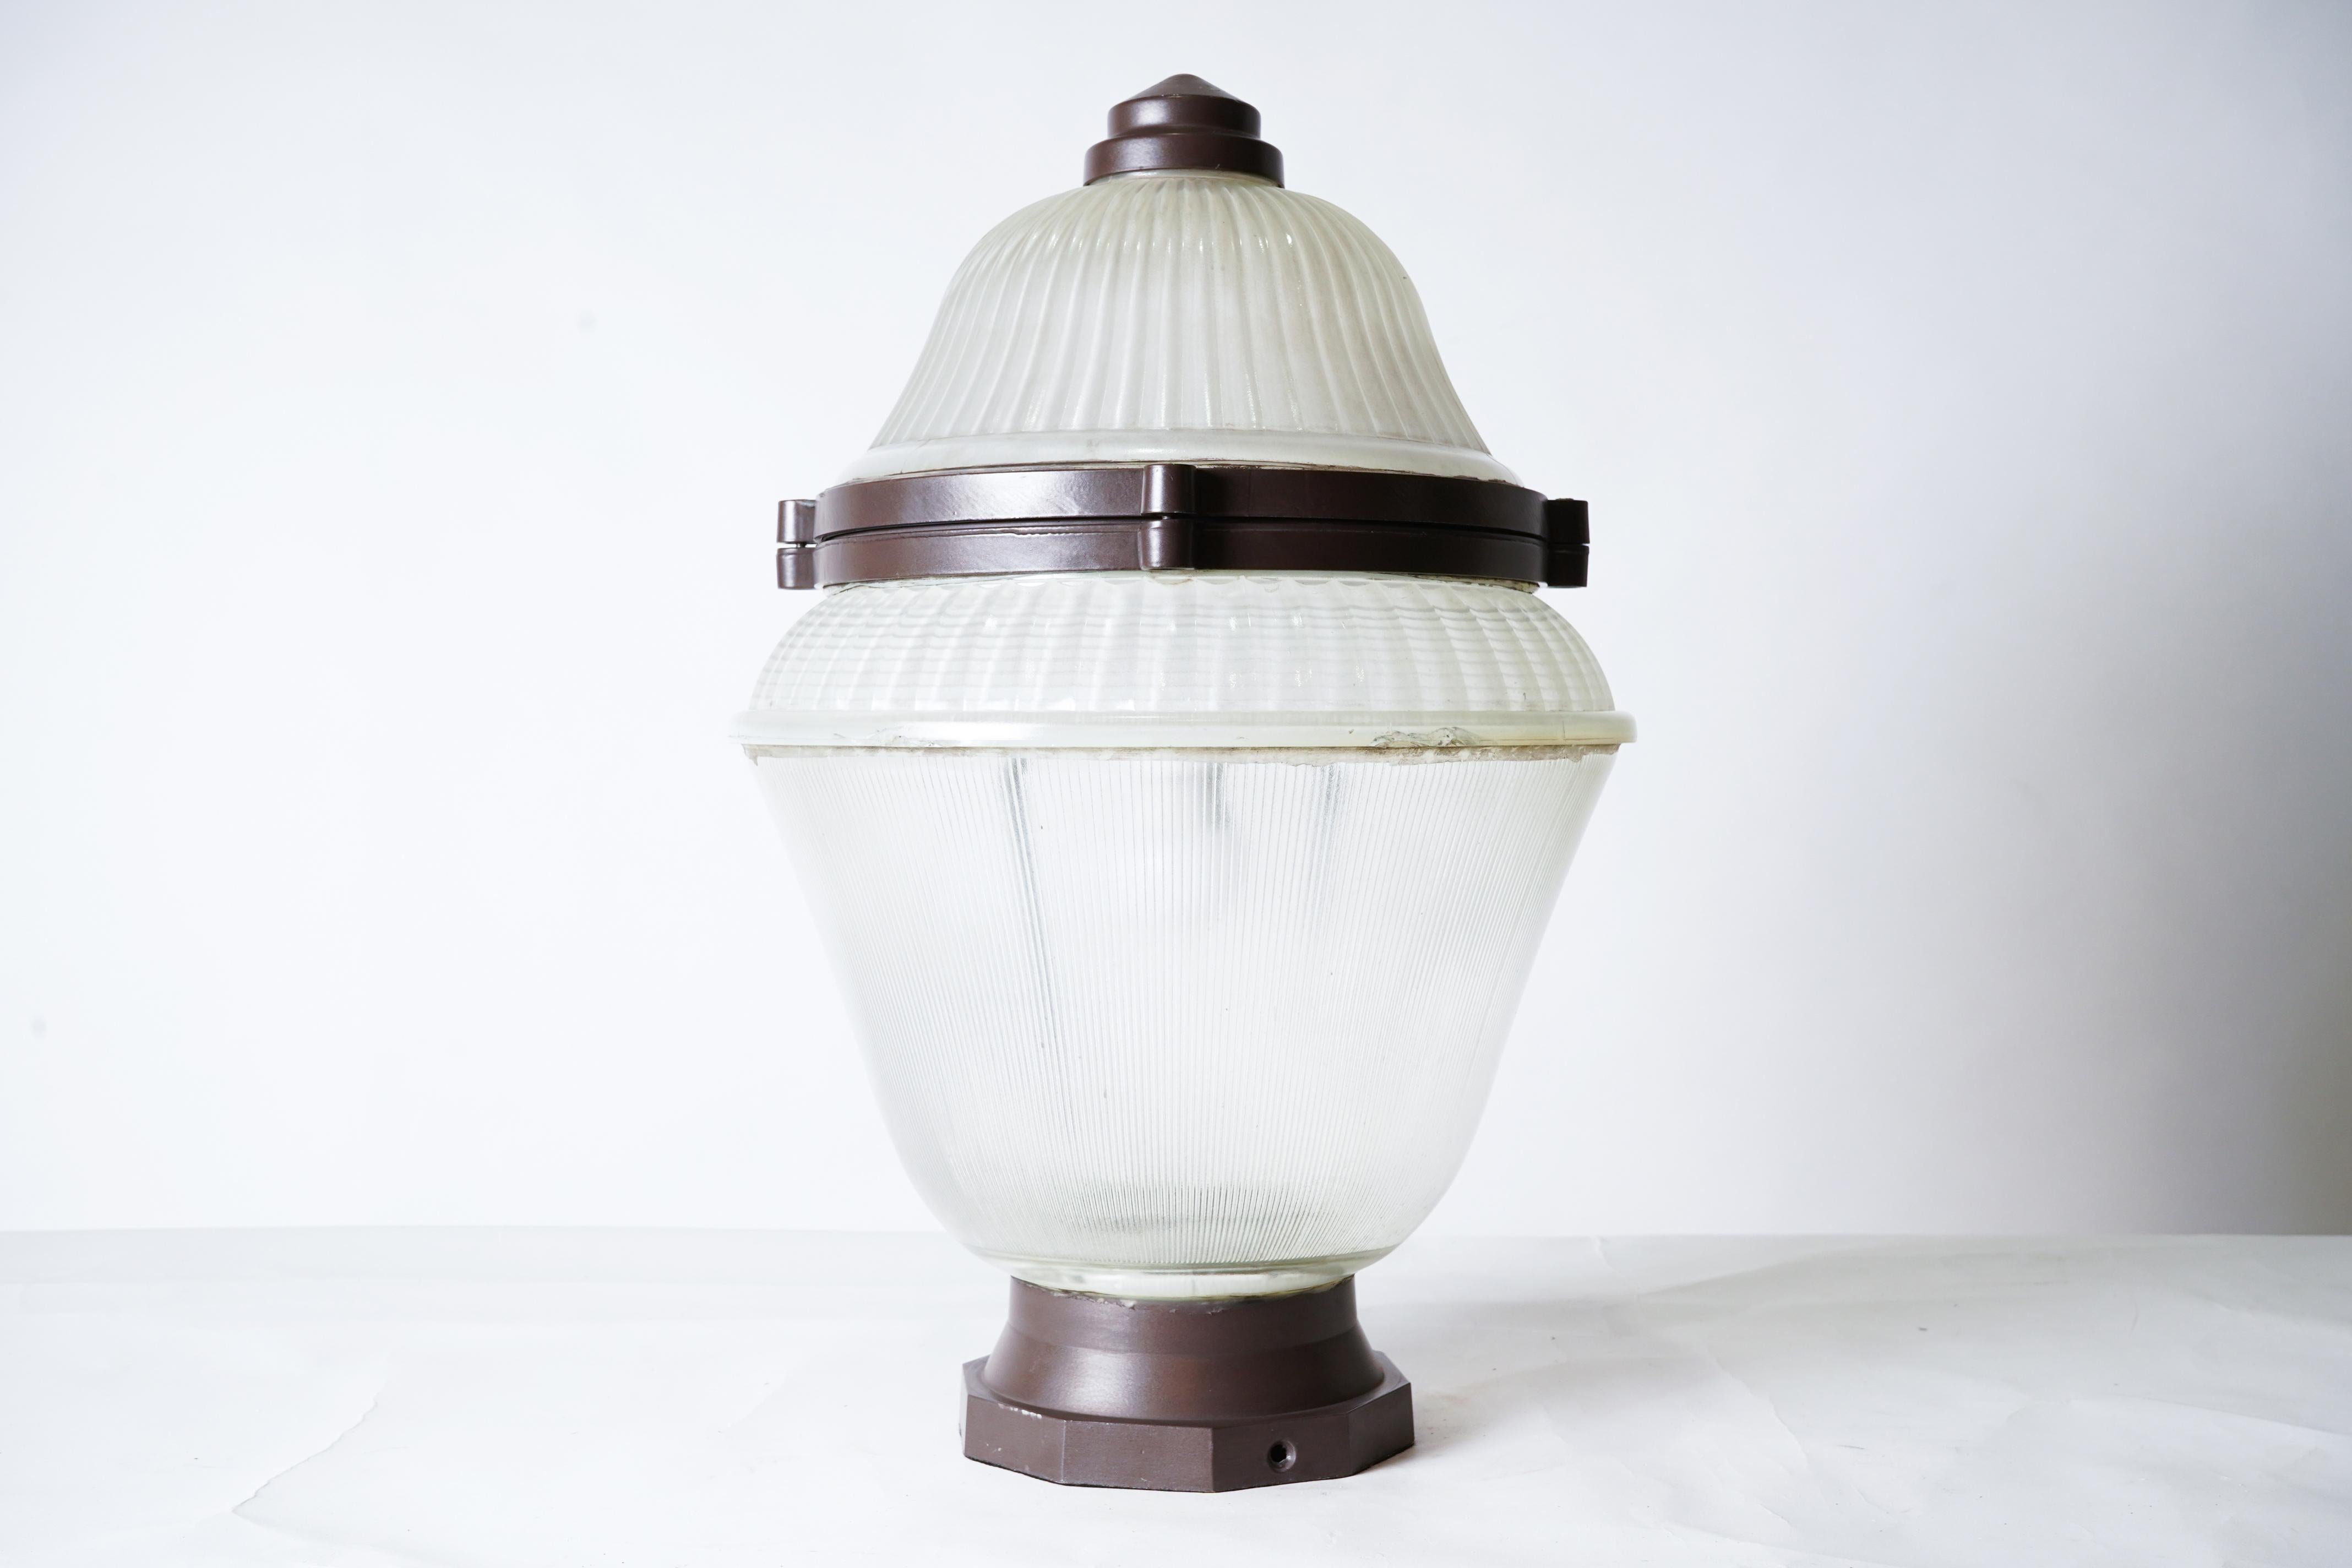 Il s'agit d'un lampadaire à globe en Holophane datant des années 1960 et provenant de Paris, en France, qui a été transformé en suspension. La caractéristique des luminaires Holophane, ou appareils d'éclairage, est le réflecteur/réflecteur en verre